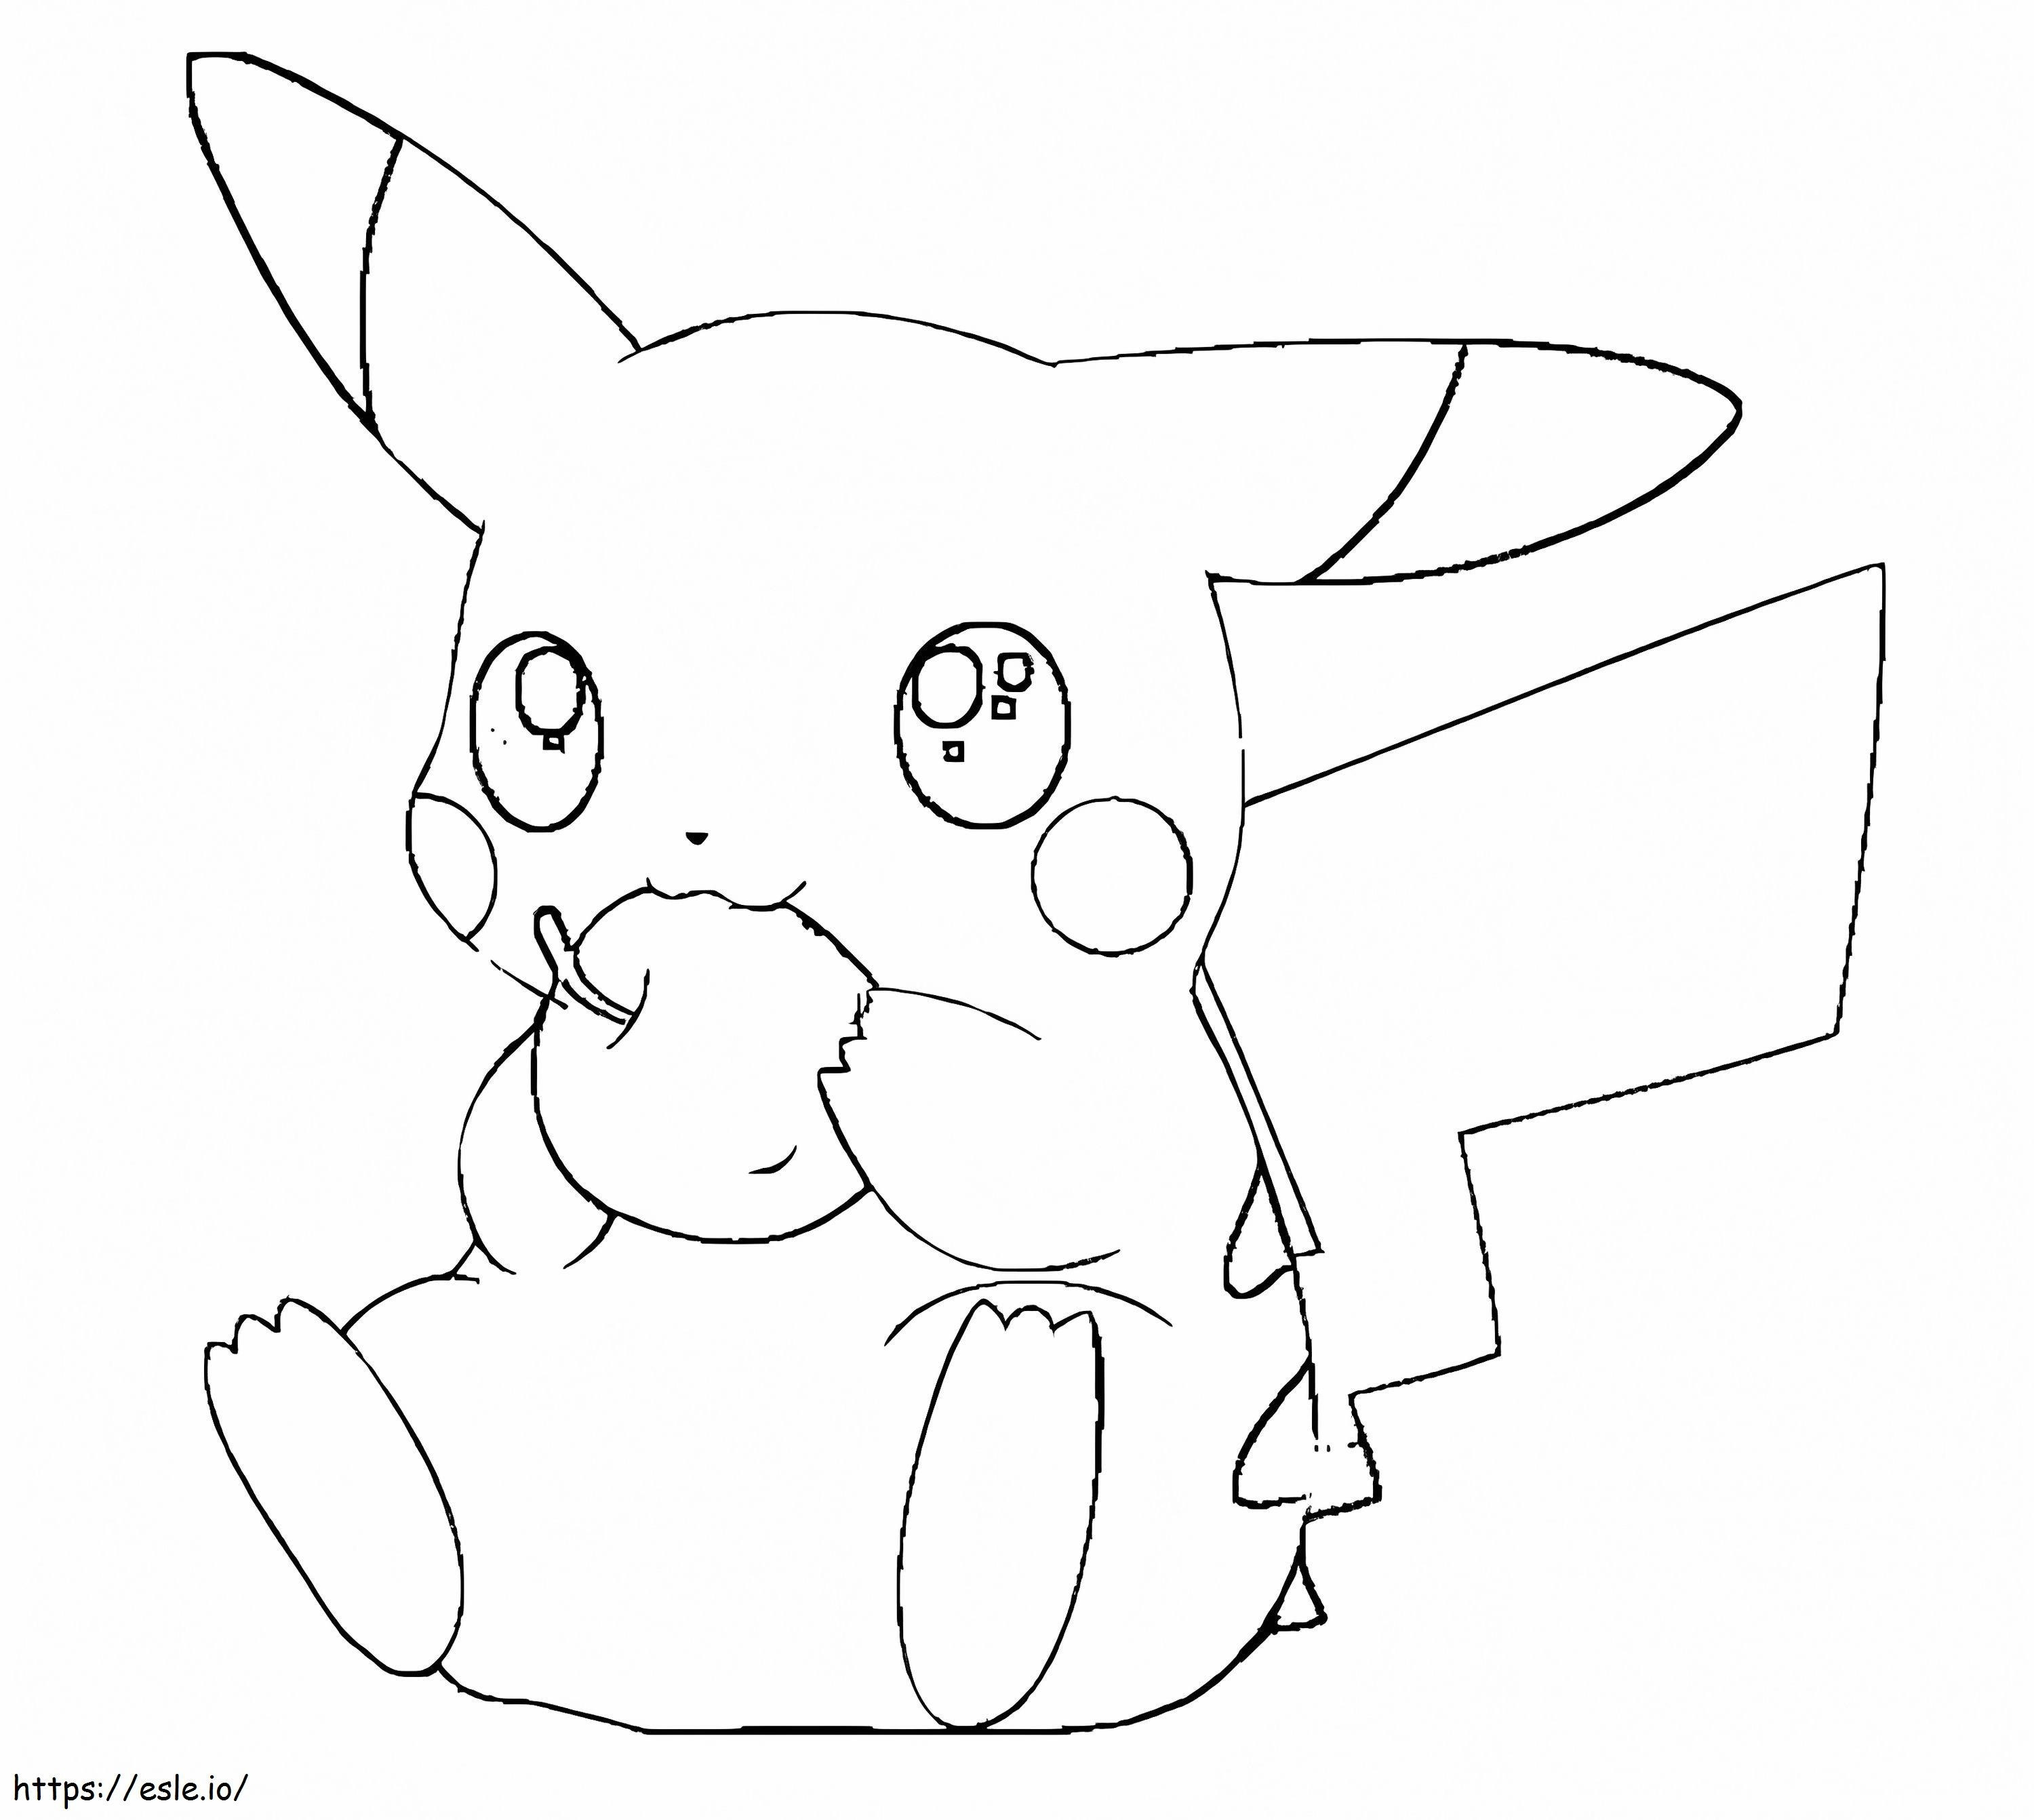 Coloriage Pikachu mangeant une pomme à imprimer dessin